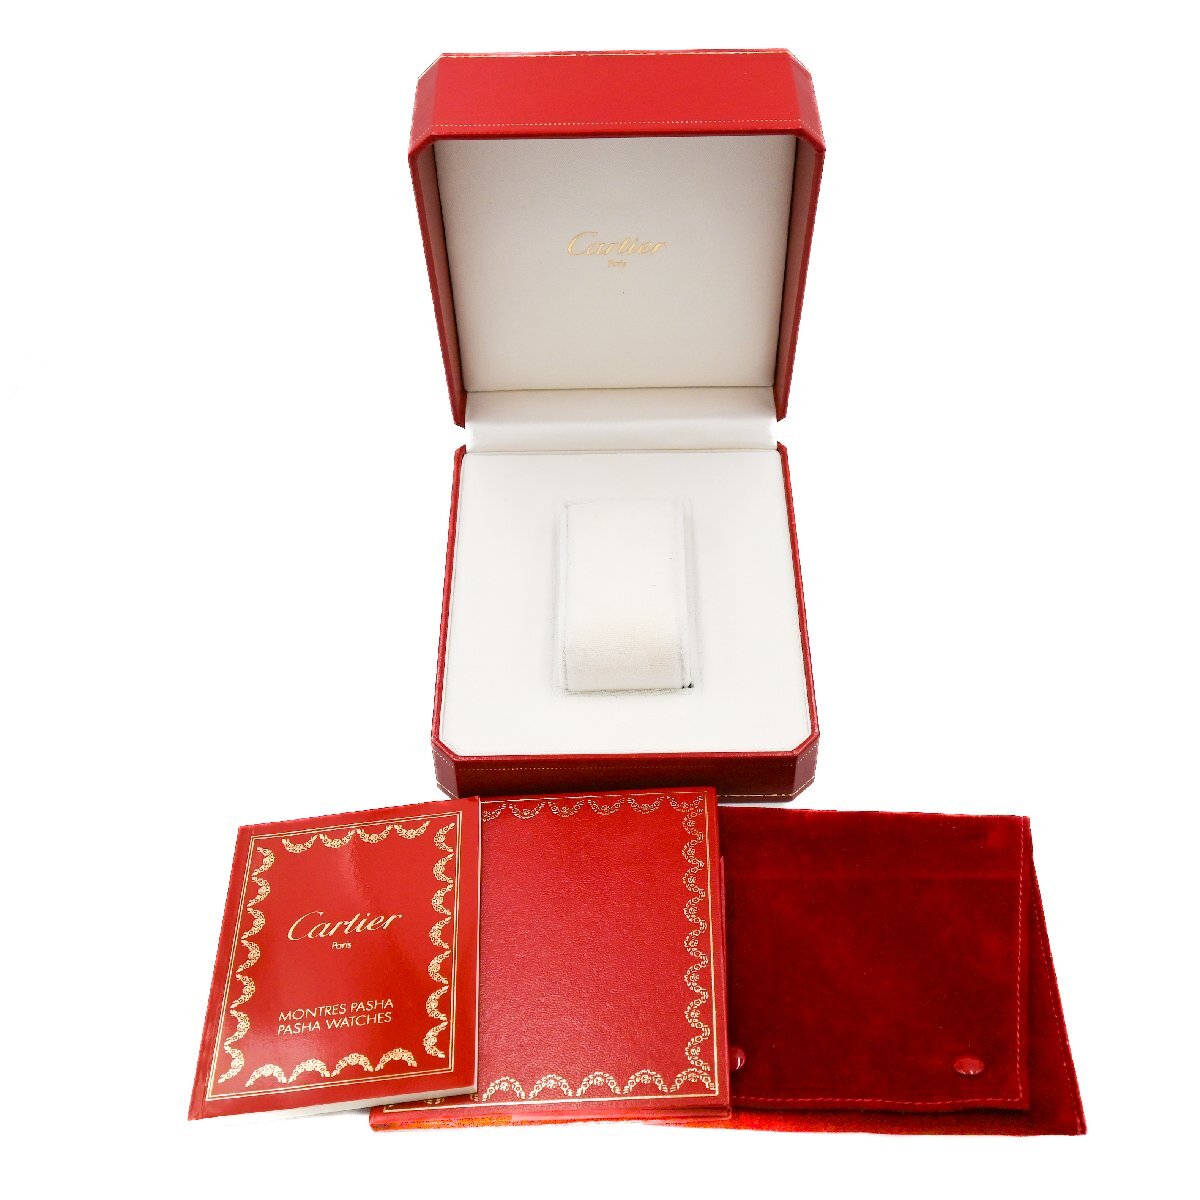 1 иен работа хорошая вещь Cartier CASE Cartier кейс суммировать 7 позиций комплект для часов пустой коробка и т.п. BOX внутри коробка наружная коробка с футляром сопутствующий товар красный красный 349920240507